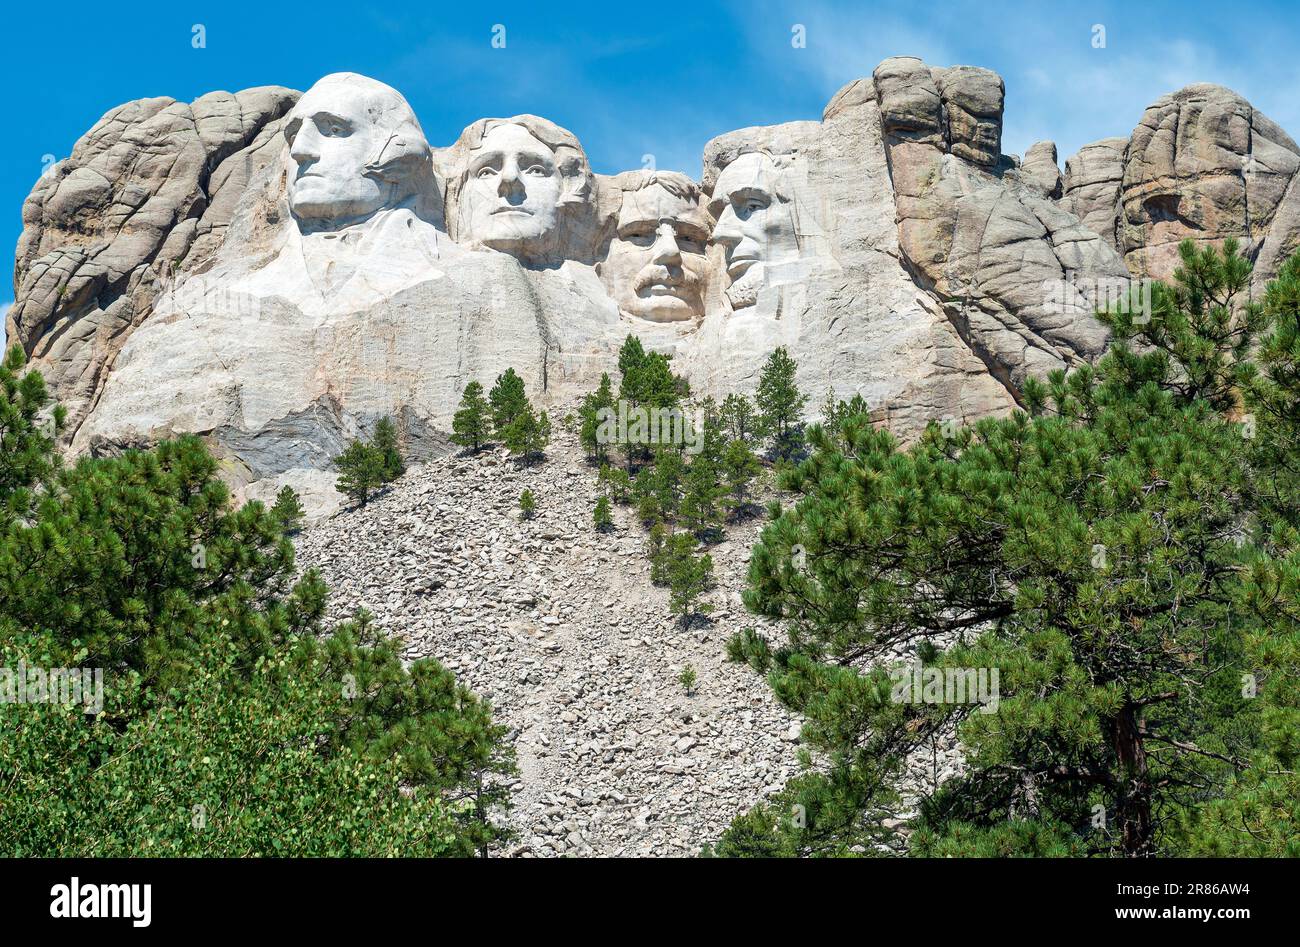 Les présidents des États-Unis ont sculpté des visages, le mémorial national de Mount Rushmore, Dakota du Sud, États-Unis. Banque D'Images